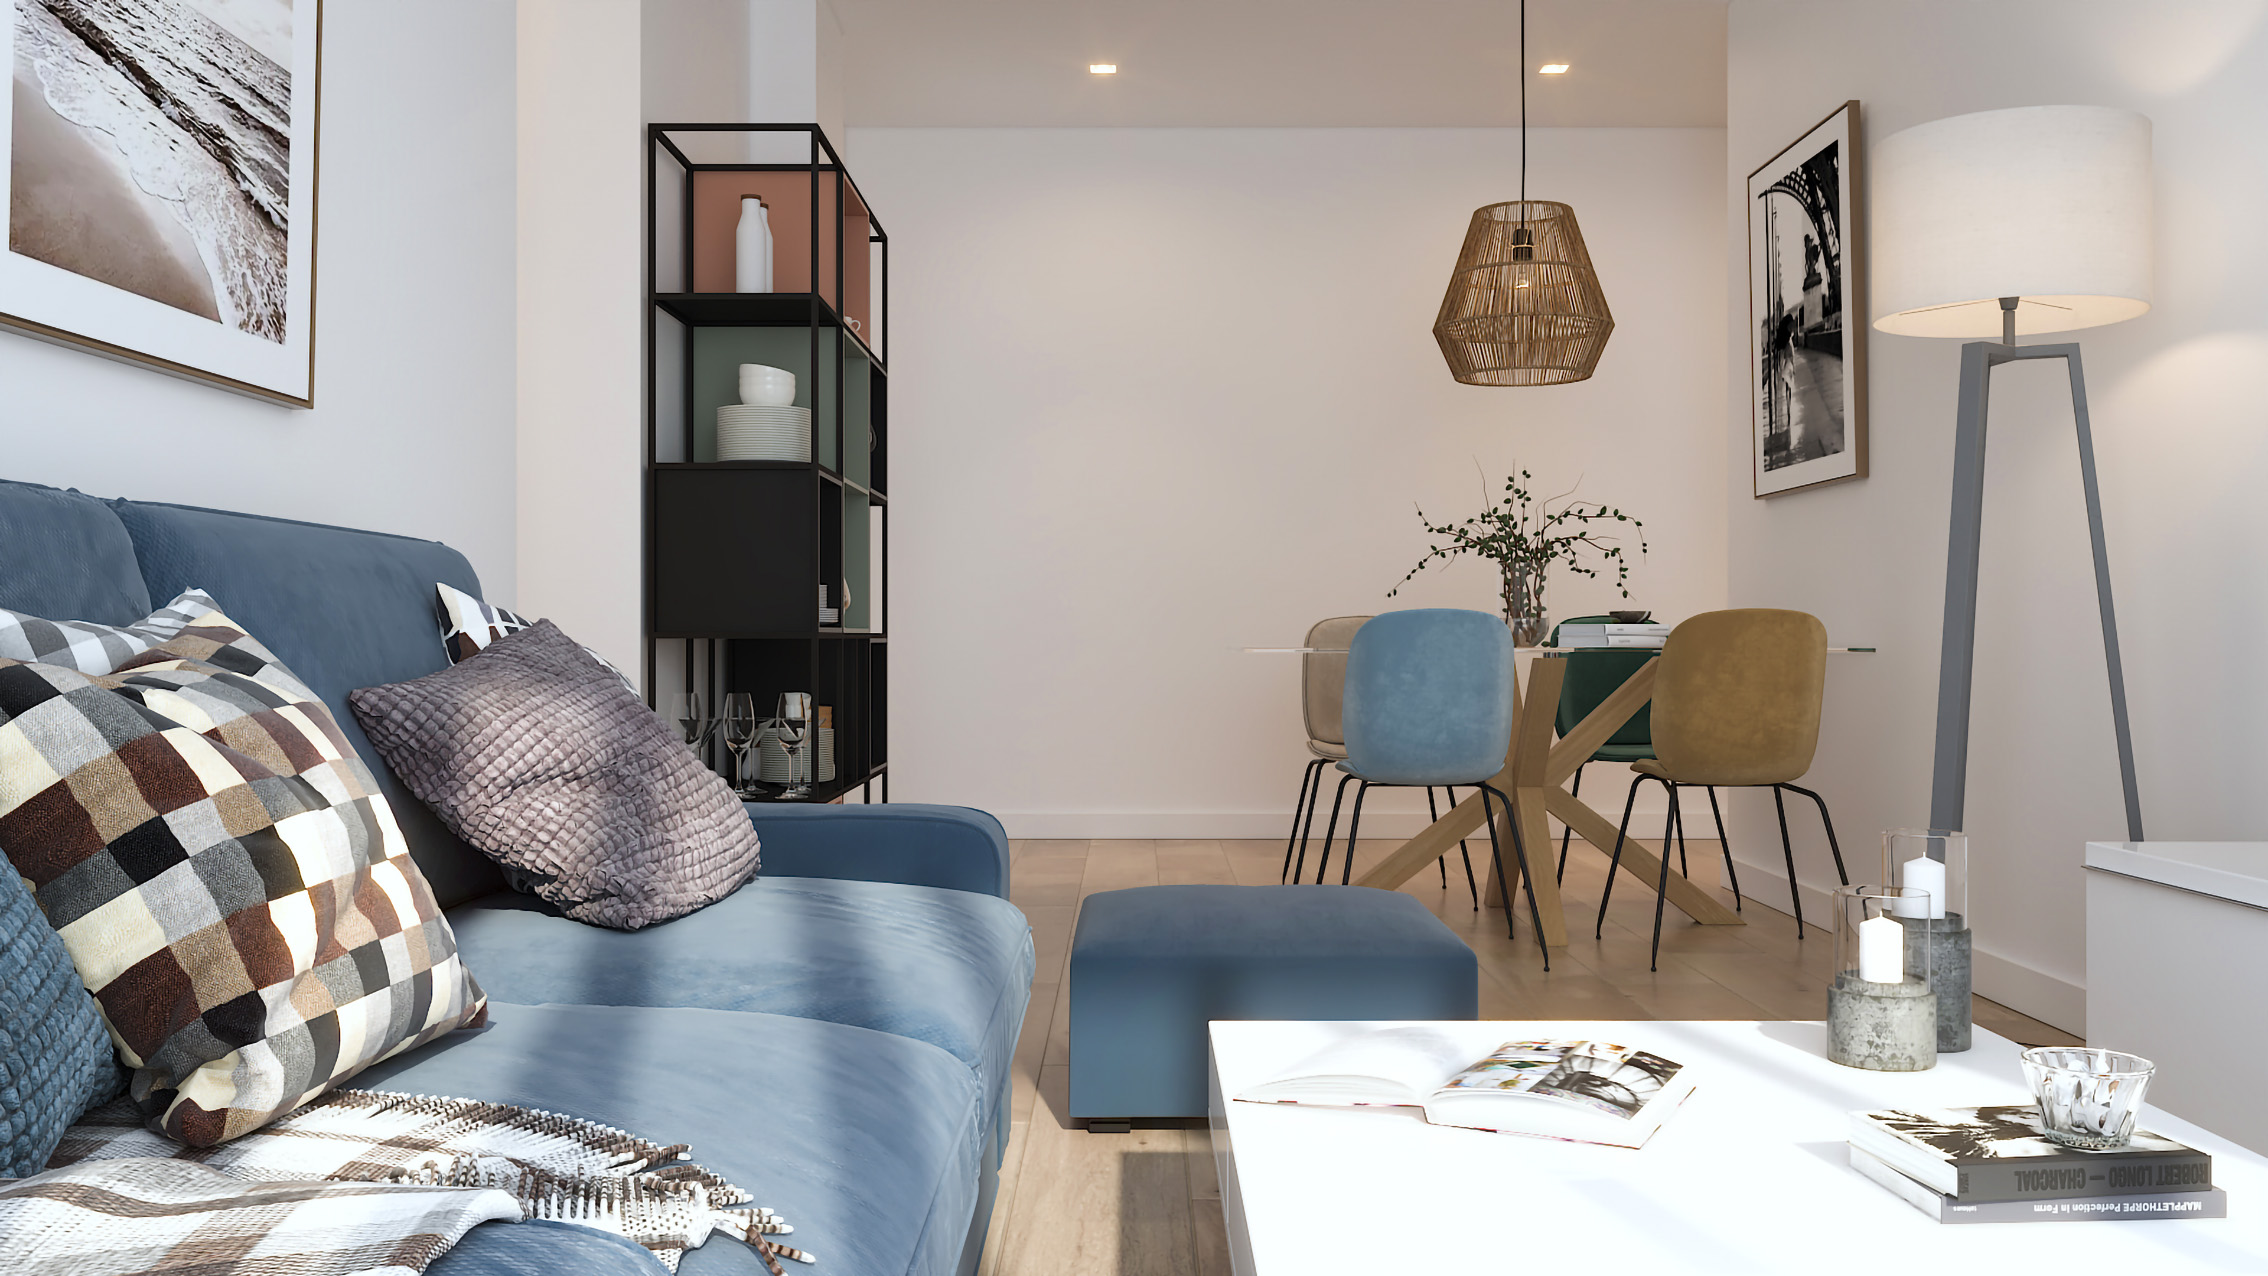 Residencial Los Molinos | Venta de pisos de obra nueva en Seseña (Toledo)